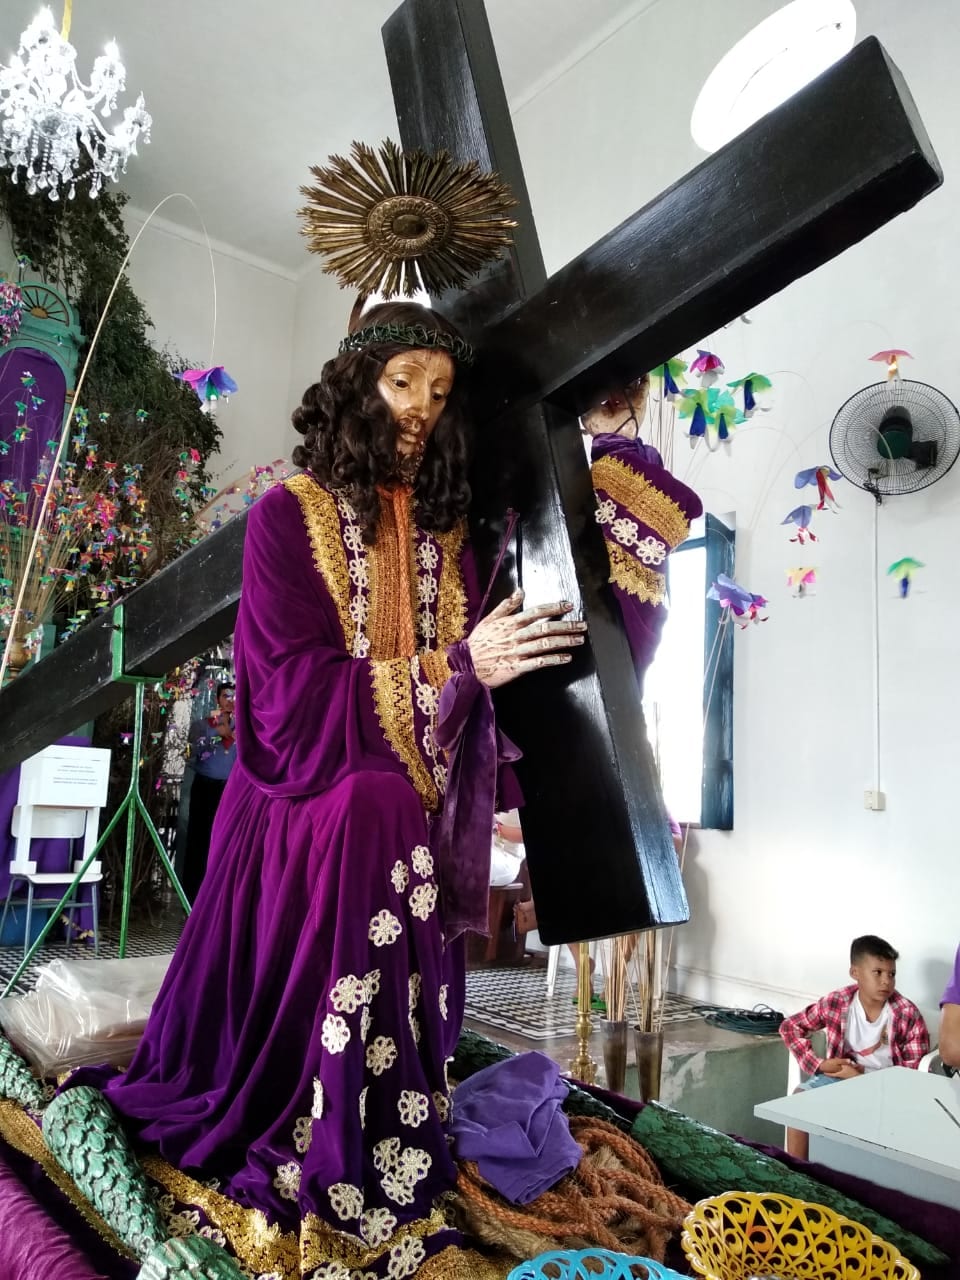 Oficio do Bom Jesus Dos Passos | Diocese de Oeiras